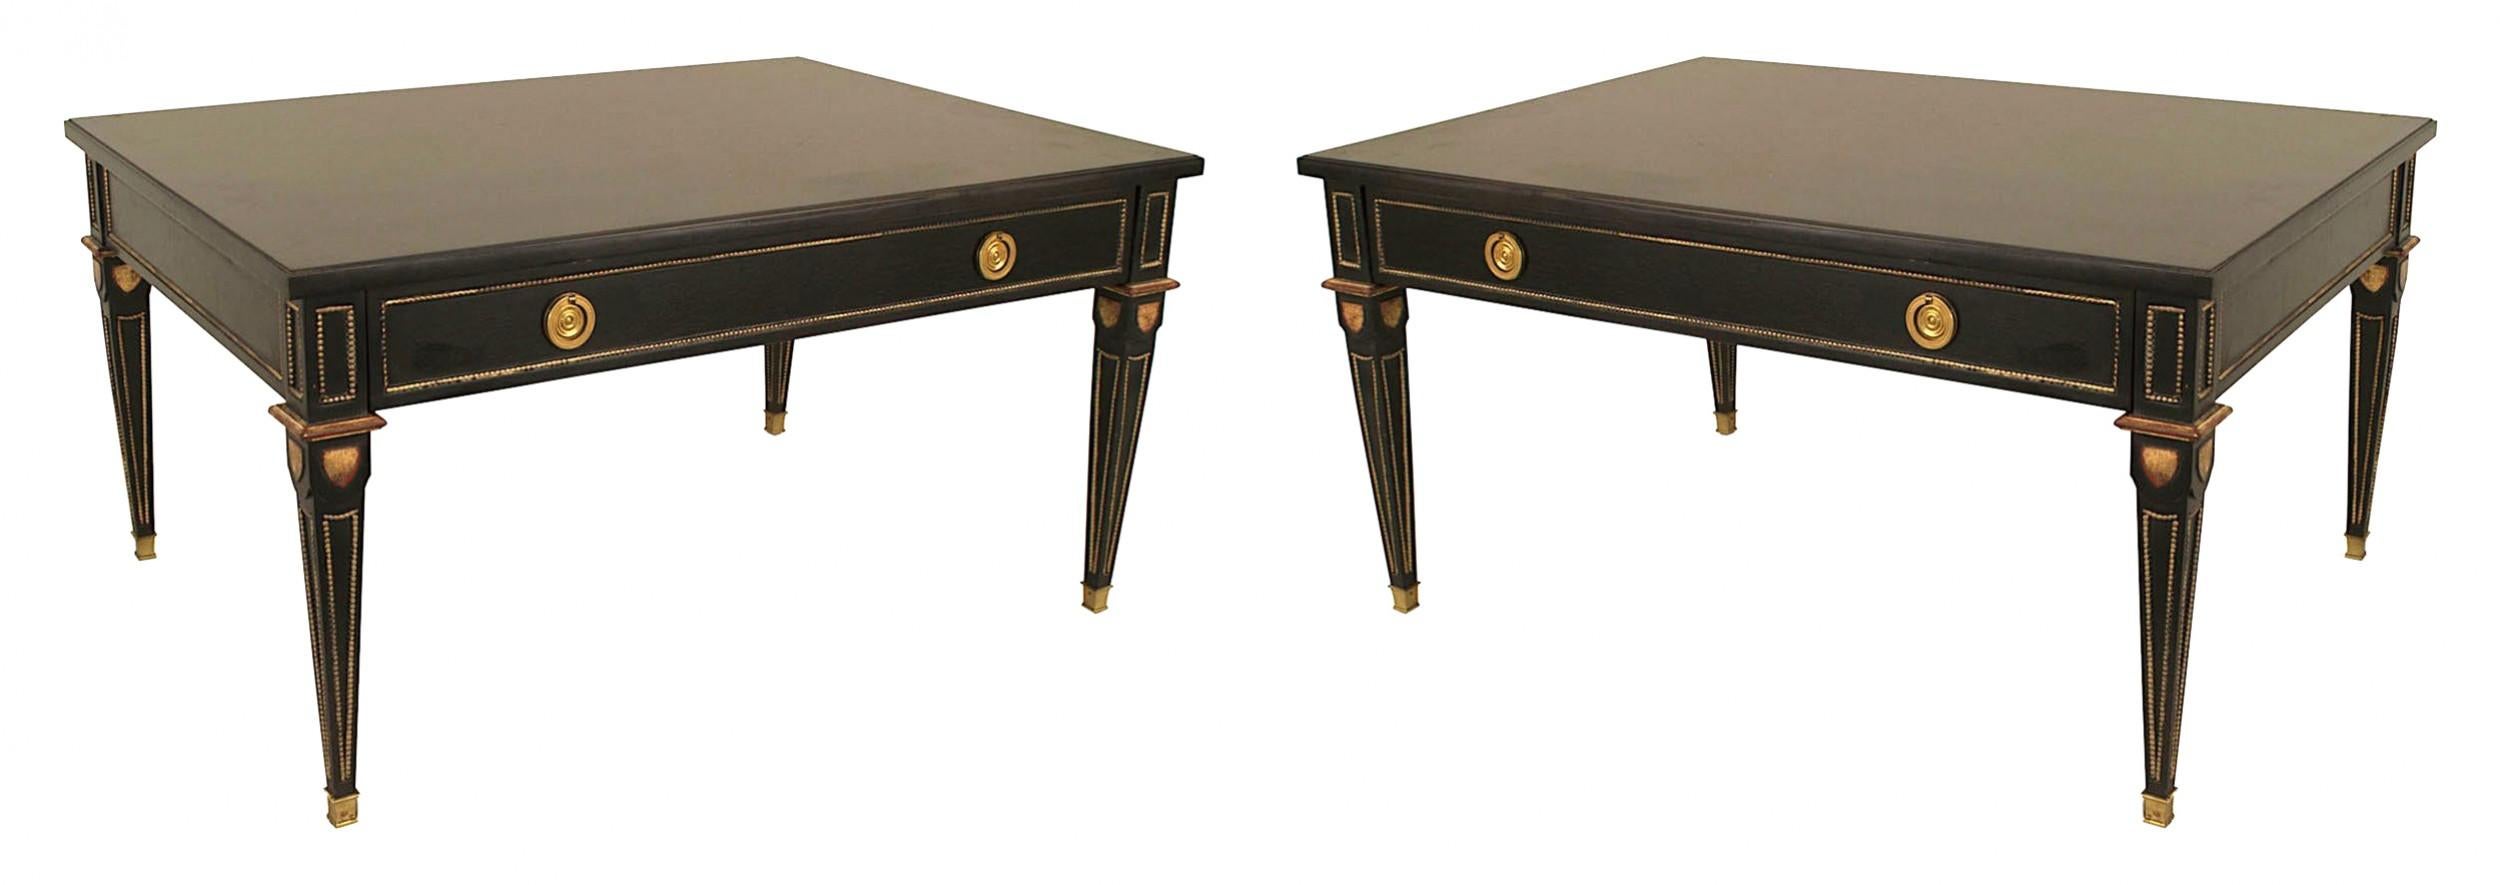 2 rechteckige ebonisierte und vergoldete Couchtische im französischen Louis XVI-Stil (1940er Jahre) mit einer Schublade, Bronzeschmuck und quadratischen, konischen Beinen. (gestempelt: JANSEN) (PREIS FÜR JEDEN)
